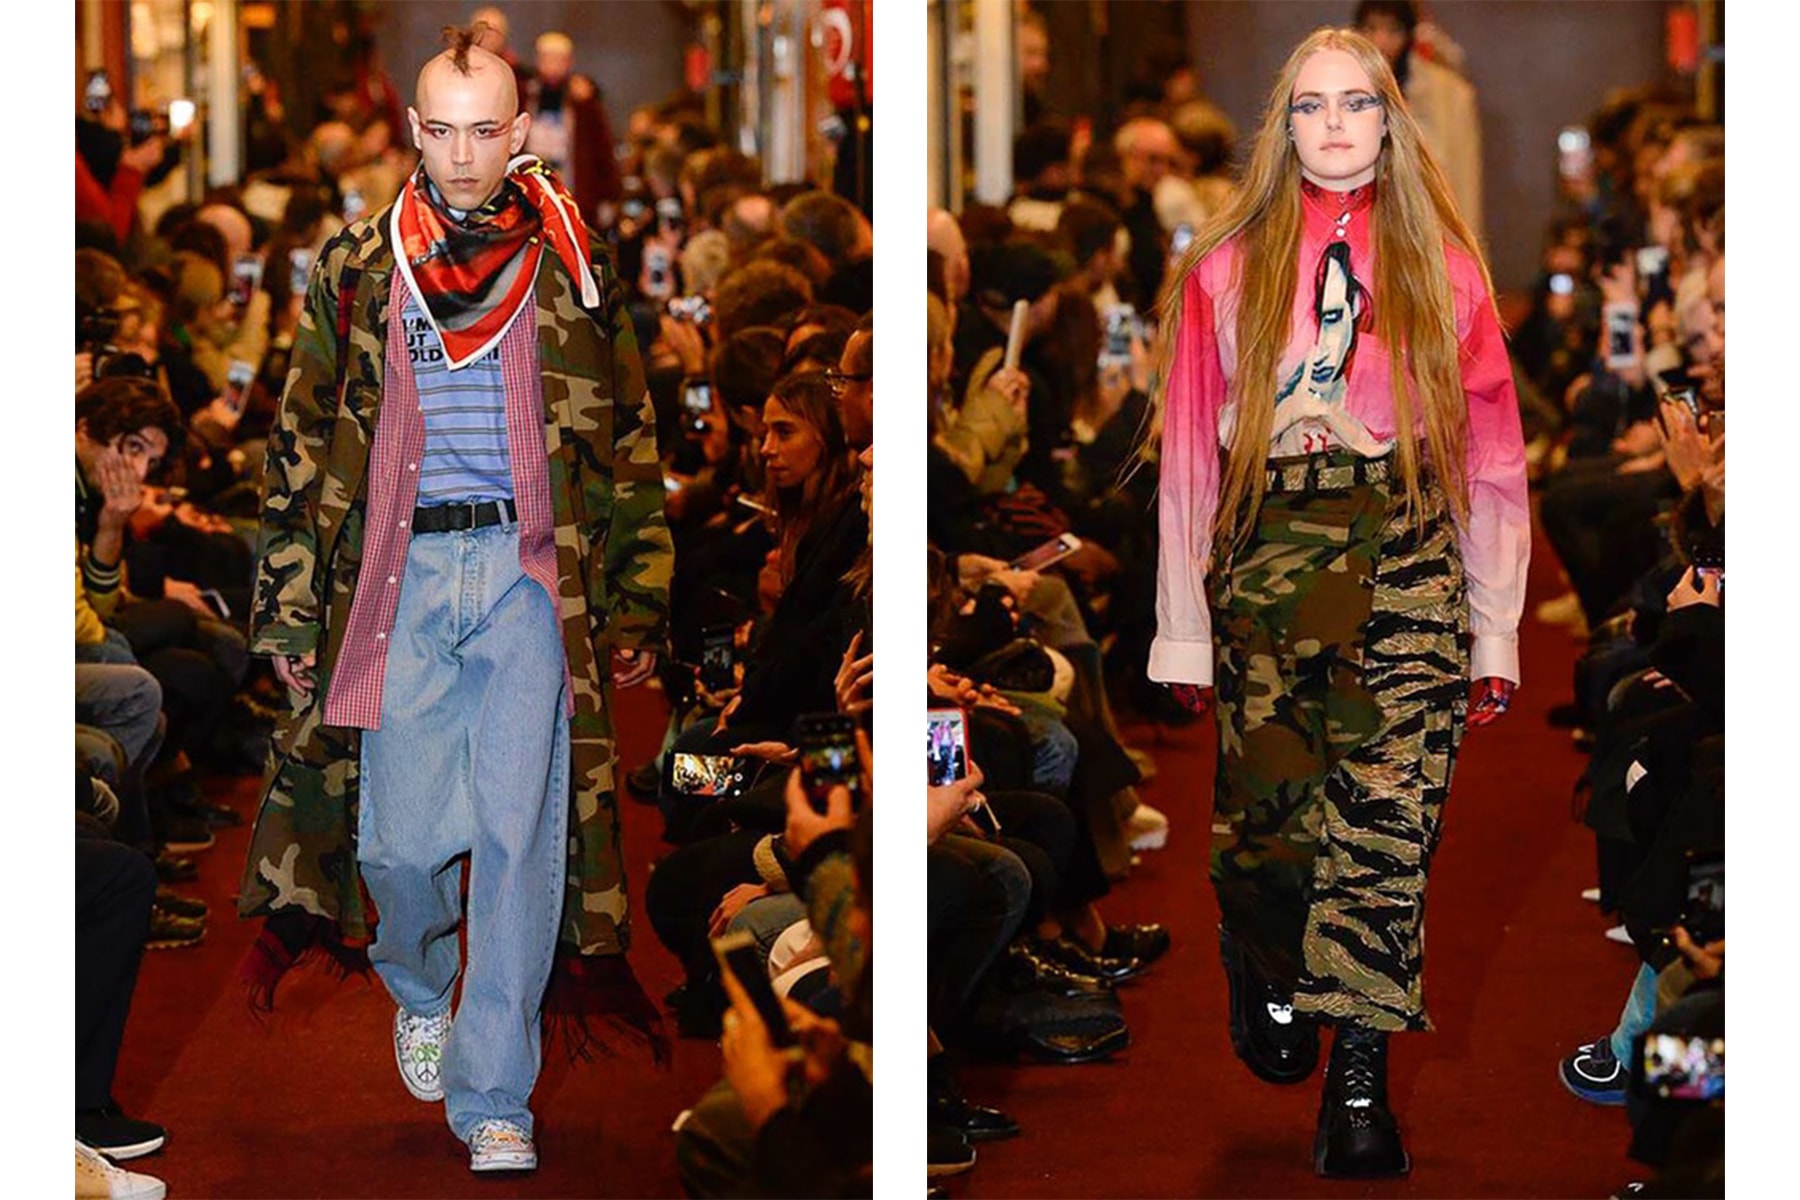 HYPEBEAST が選ぶ Paris Fashion Week: Men's 2018年秋冬ベストルック Day 4 〈Junya Watanabe MAN〉や〈COMME des GARÇONS HOMME PLUS〉の登場に加え、この日は非公式スケジュールで〈Vetements〉も単独ランウェイを開催  2018年秋冬のパリファッションウィーク・メンズ4日目は、いよいよ後半戦に突入。この日の先陣を切ったのは、日本が誇るメンズウェアブランド〈Junya Watanabe MAN（ジュンヤ ワタナベ マン）〉。「株式会社コムデギャルソン」の取締役副社長を兼任するデザイナー・渡辺淳弥は、今季のパートナーに〈The North Face（ザ・ノース・フェイス）〉、〈Canada Goose（カナダ グース）〉、〈Karrimor（カリマー）〉といったアウトドアの名門を招聘。また、この日は〈COMME des GARÇONS HOMME PLUS（コム デ ギャルソン・オム プリュス）〉も登場し、不可思議なテキスタイルと様変わりな被り物で観衆を呆気に取ったほか、スニーカーヘッズたちの間では〈Nike ACG（ナイキ ACG）〉とのコラボモデルに一際注目が集まった。  さらに、公式スケジュールではないものの、この日は〈Vetements（ヴェトモン）〉も単独でランウェイを開催。ストリート＆オーバーサイズというDemna Gvasalia（デムナ・ヴァザリア）の真骨頂の中でも、最新コレクションではスカーフと壊滅的なミリタリーパンツの提案が非常に印象的に映った。  『HYPEBEAST』編集部の独断と偏見でピックアップした4日目のベストルックは、上のフォトギャラリーから。あわせて、数あるランウェイをハイライト形式でまとめた2018年秋冬シーズンの各都市の日別ベストルックは、以下からご確認を。